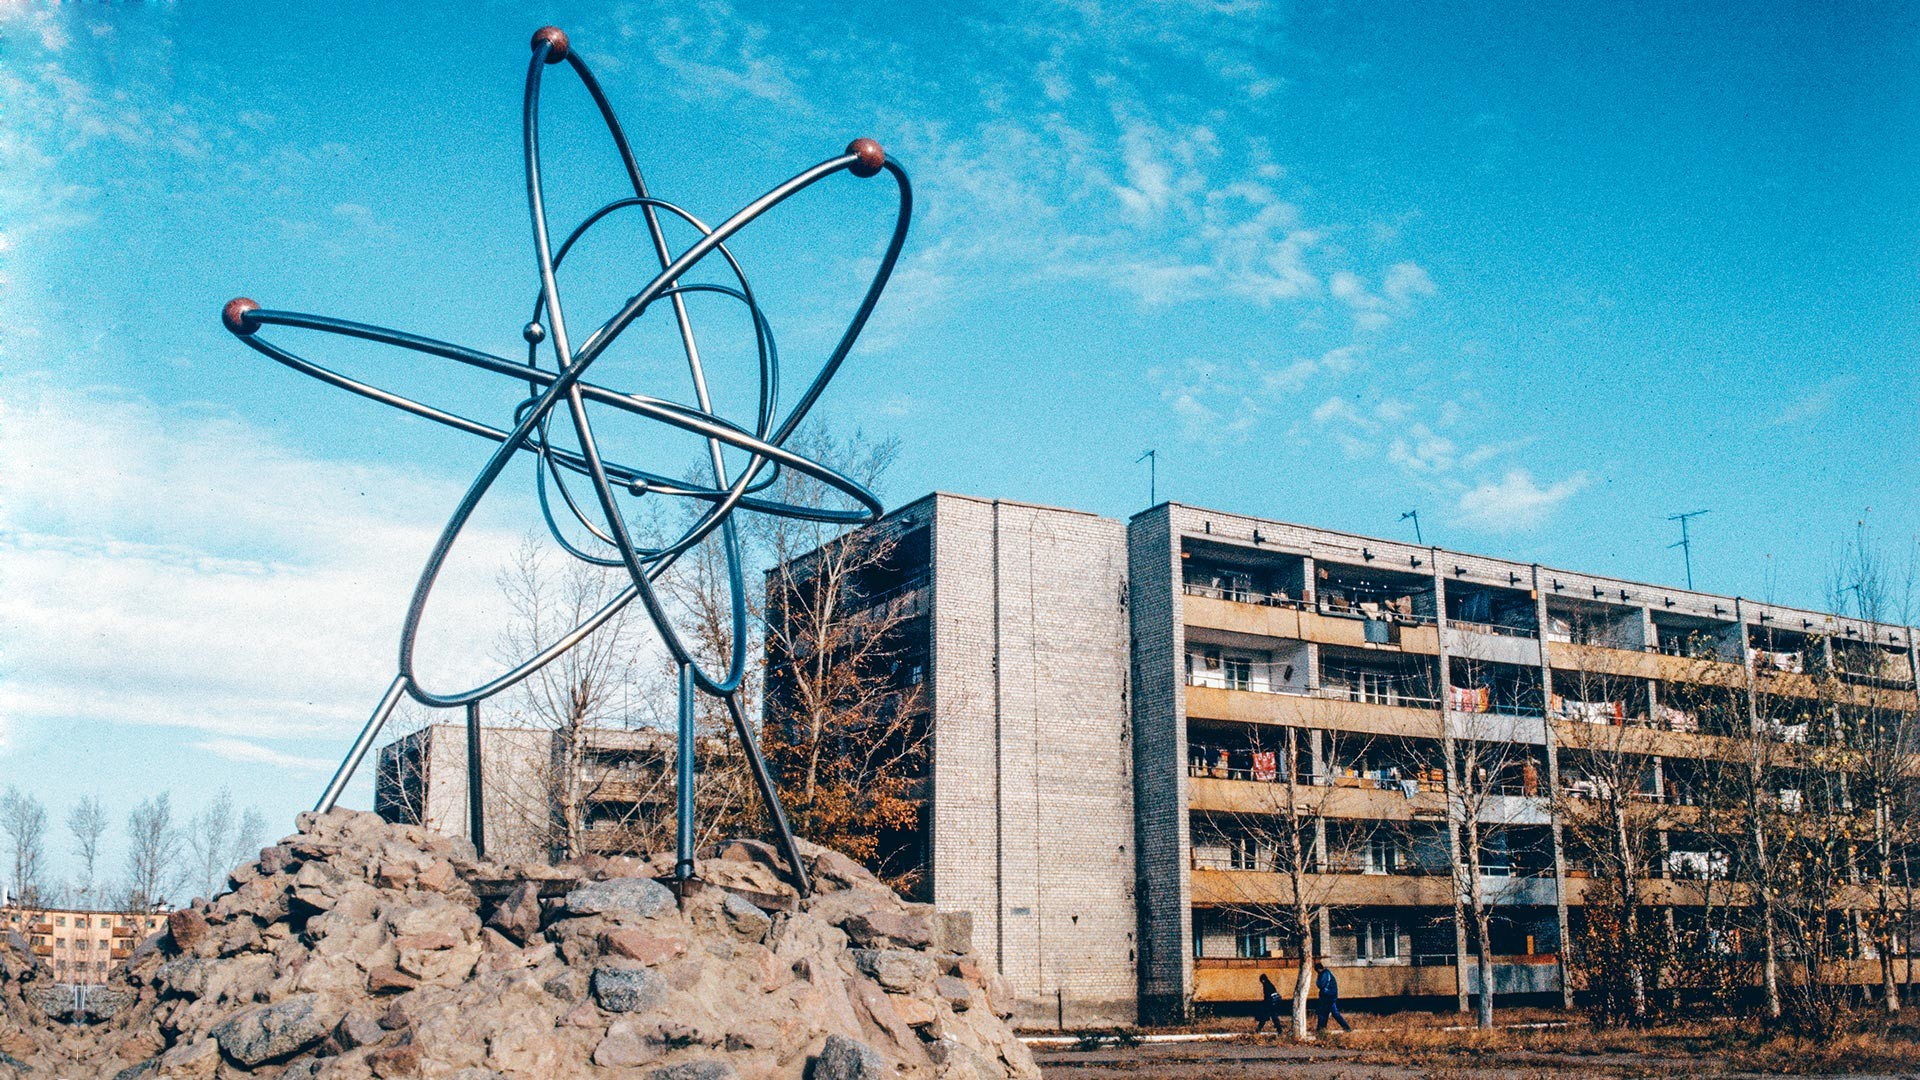 セミパラチンスク核実験場に隣接した核実験におけるかつての中心都市であったクルチャトフ市